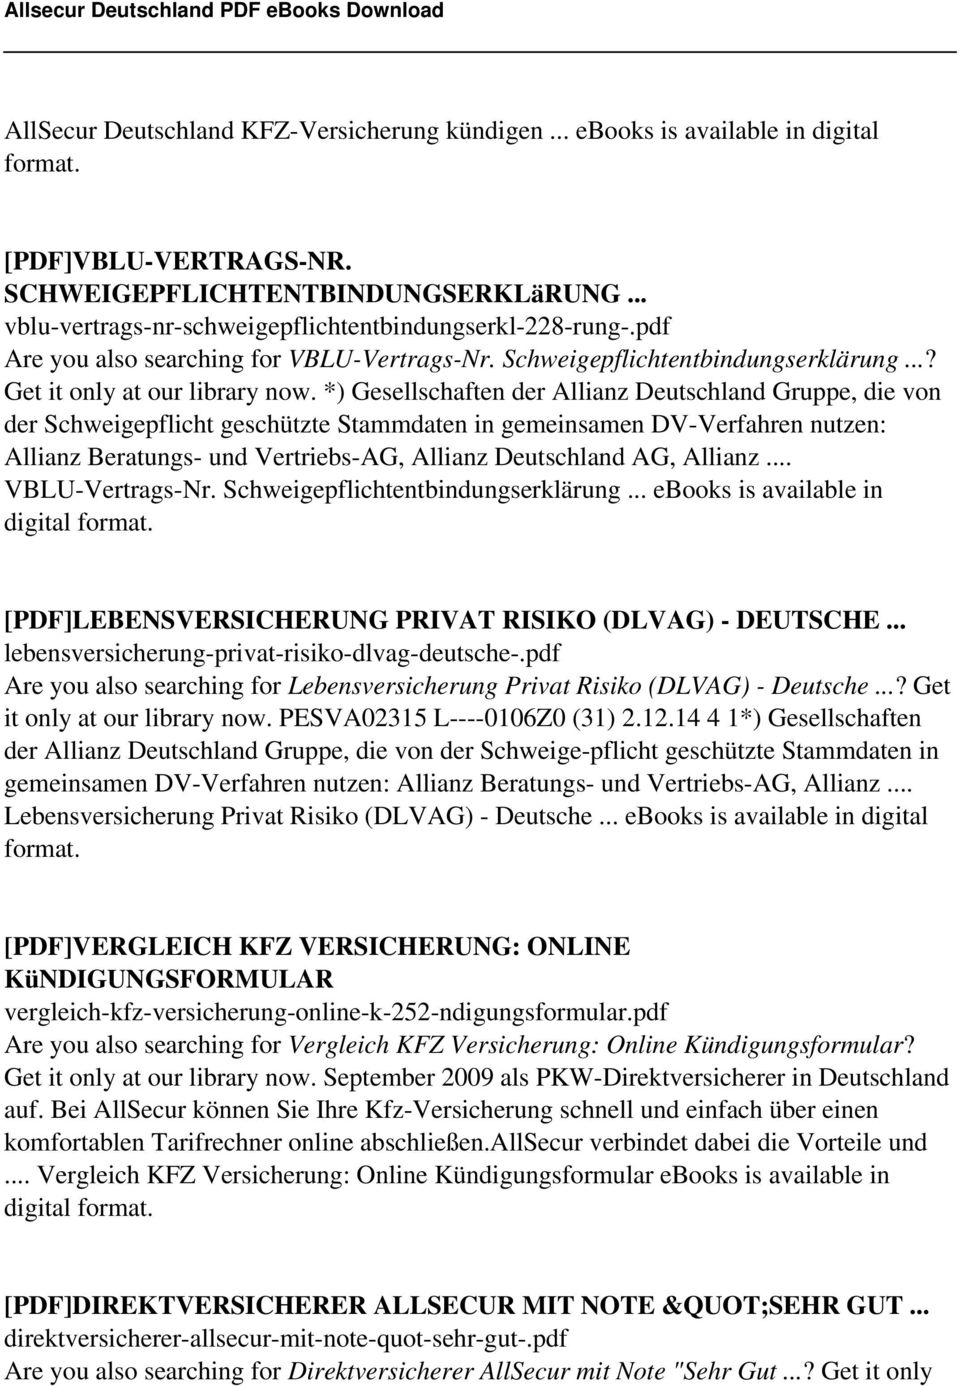 Allsecur Deutschland Download Allsecur Deutschland Pdf Ebook Pdf